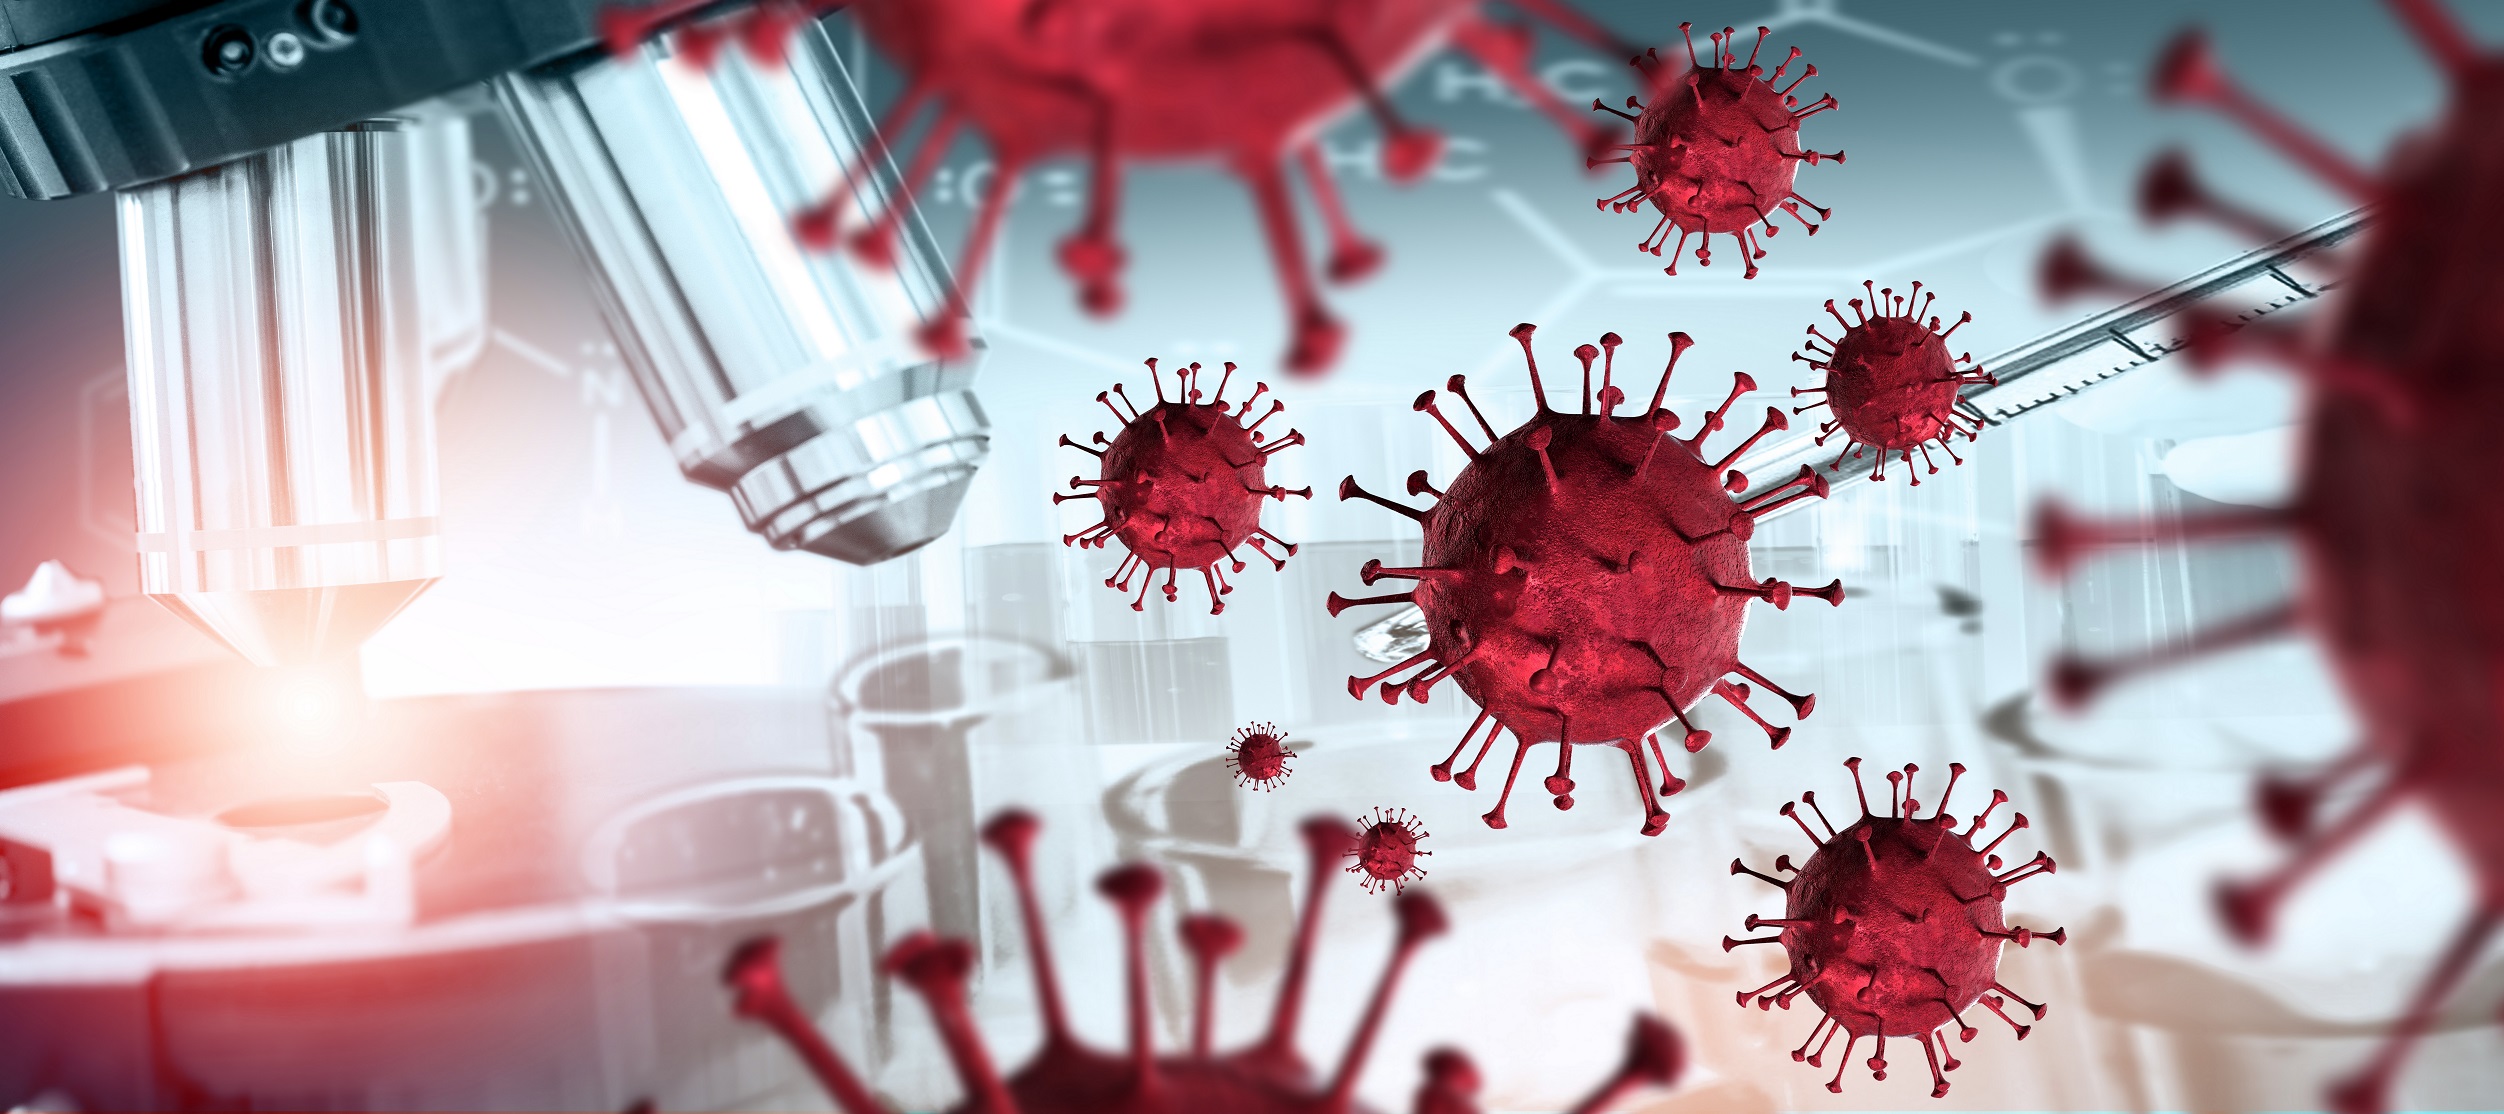 coronavirus and research